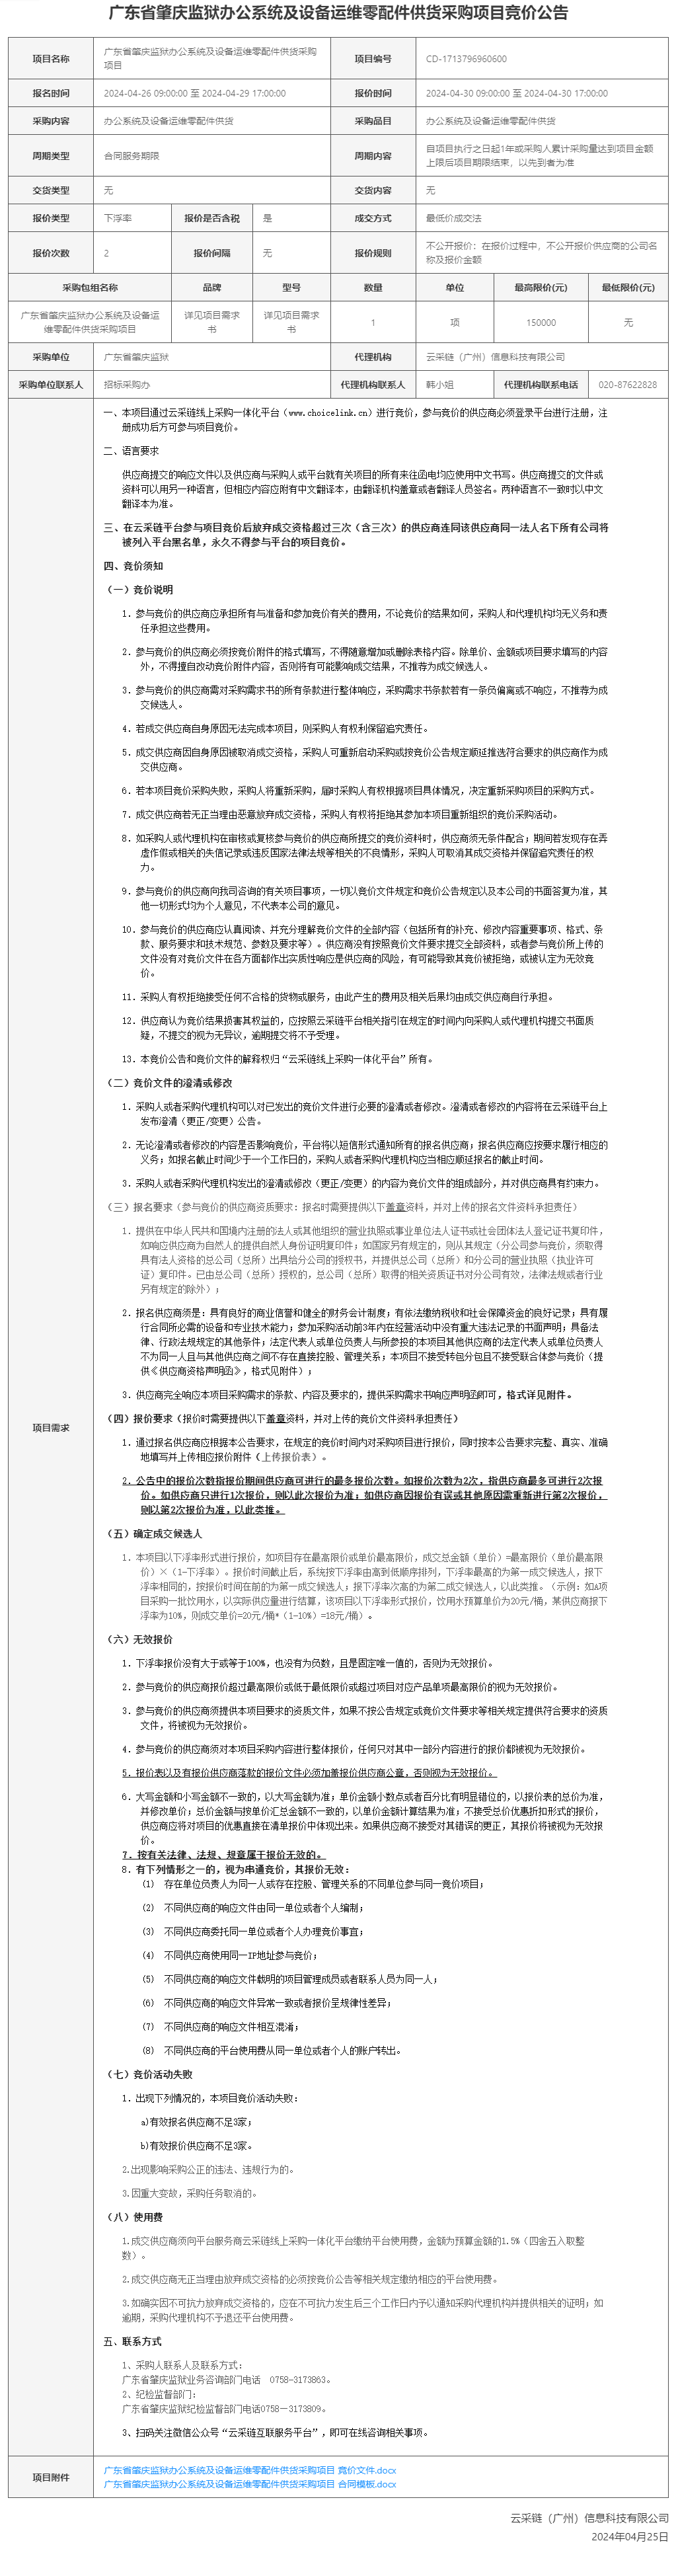 广东省肇庆监狱办公系统及设备运维零配件供货采购项目竞价公告.png